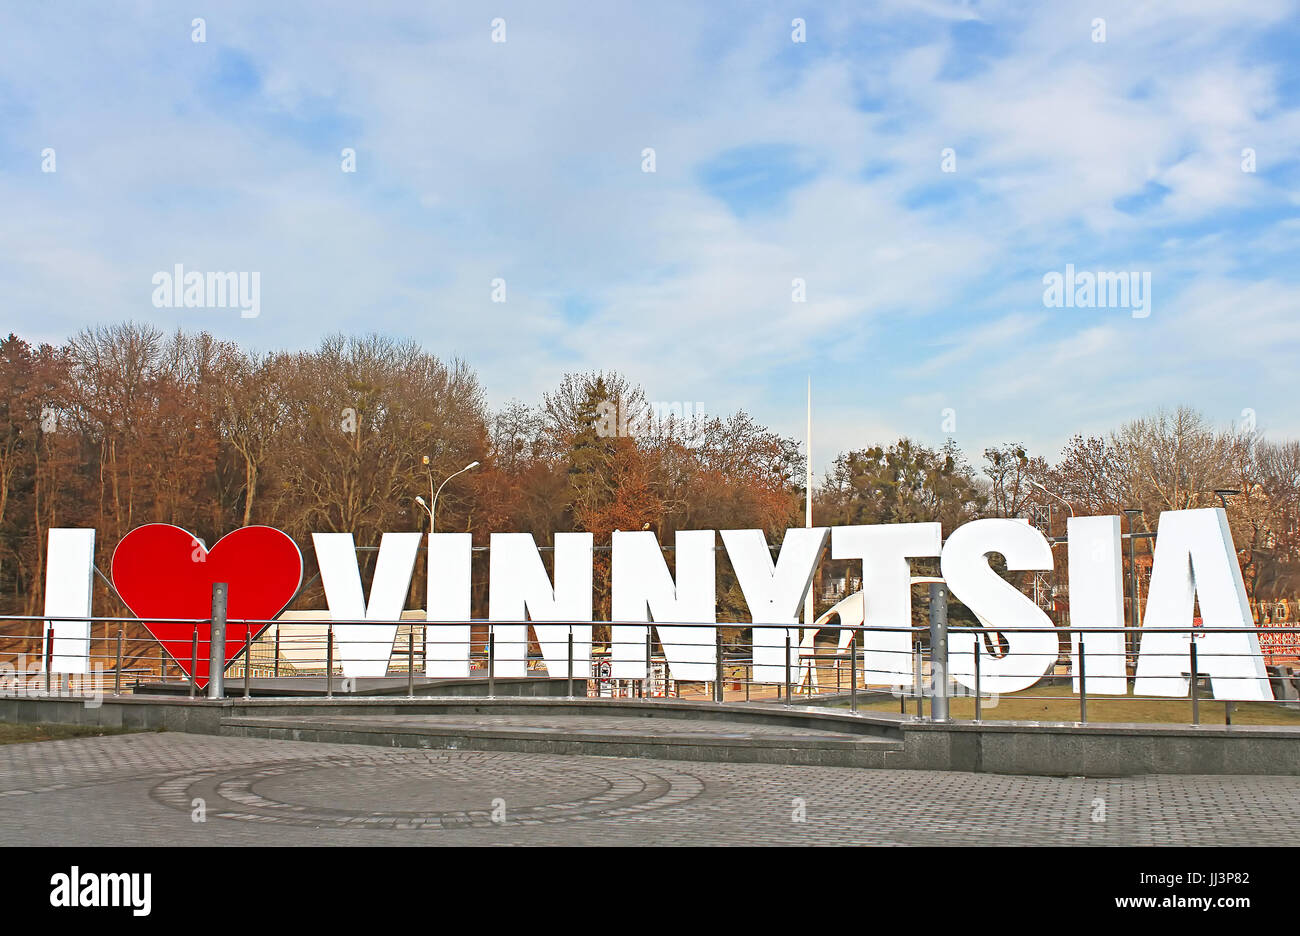 VINNYTSIA, UKRAINE - DECEMBER 25, 2015: Sign 'I LOVE VINNYTSIA' in the centre of the city, Vinnytsia, Ukraine Stock Photo